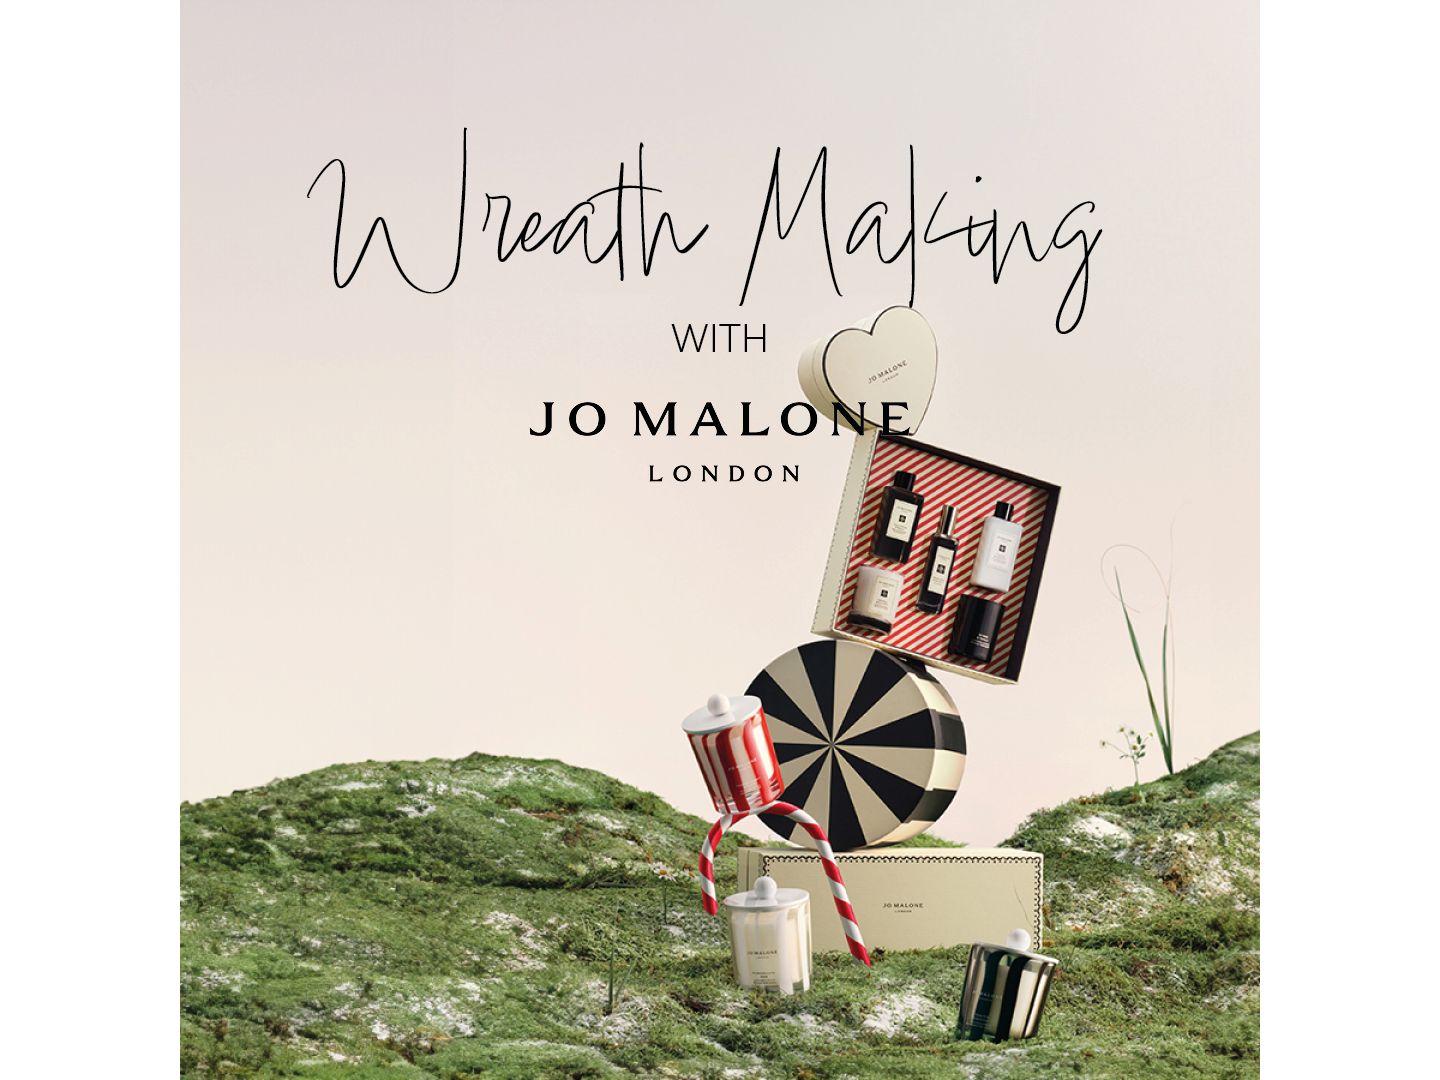 Wreath-Making Masterclass with Jo Malone London